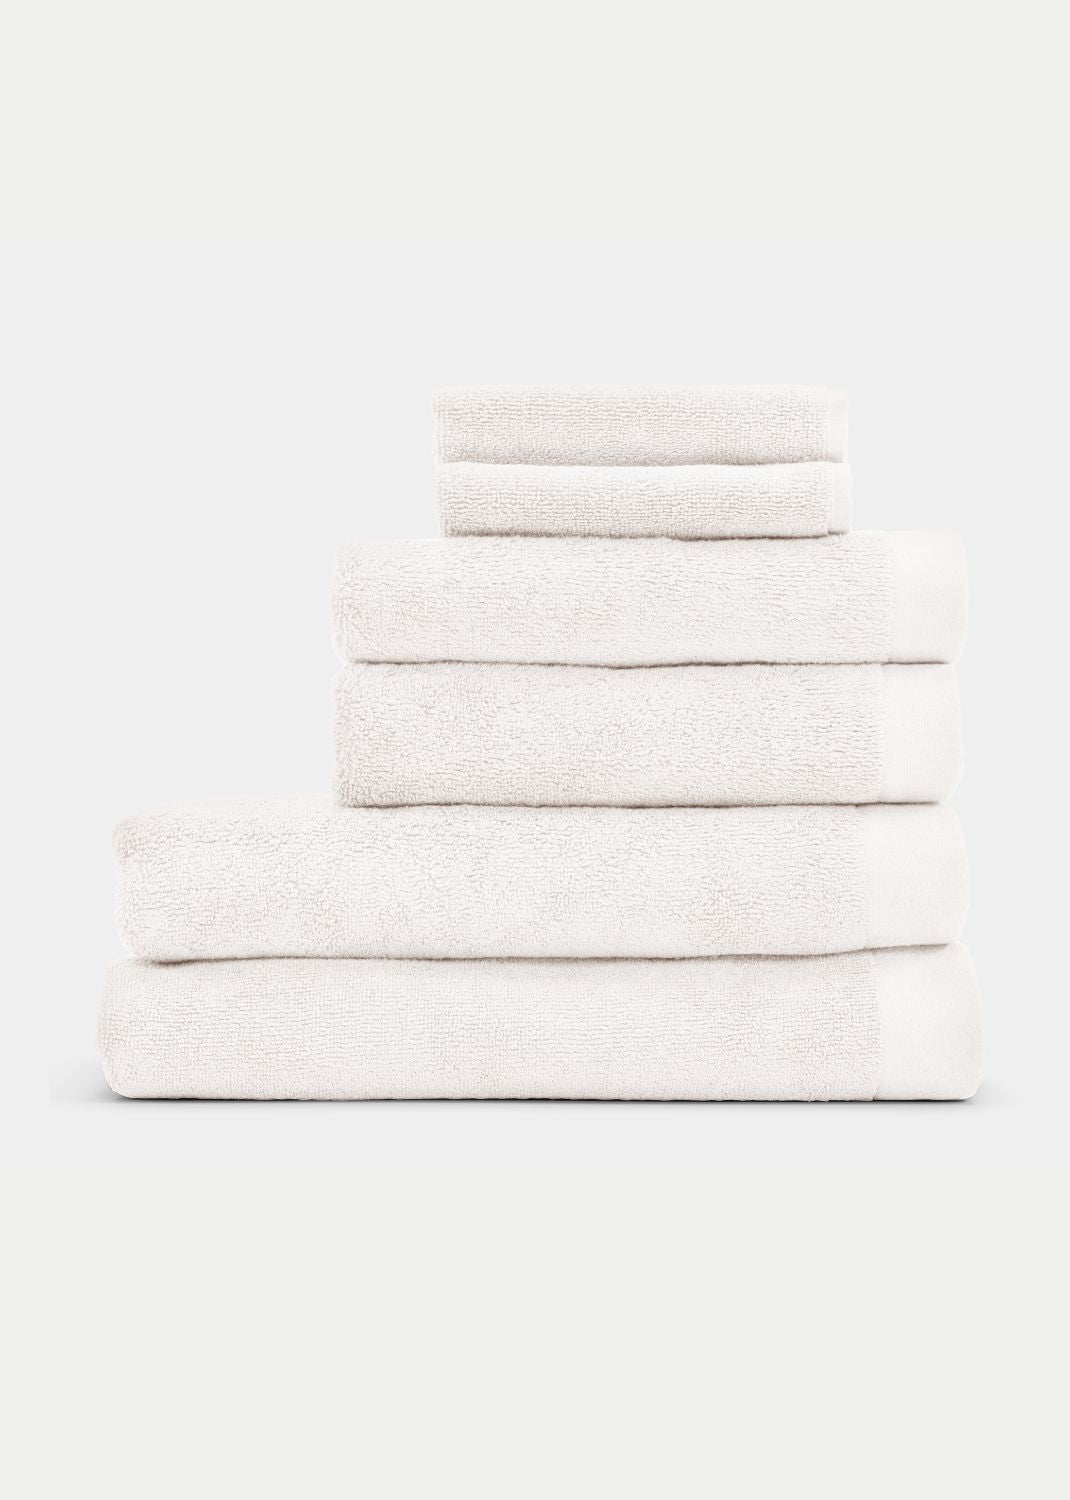 Handtuch Baumwolle Weiß 30 x 30 cm